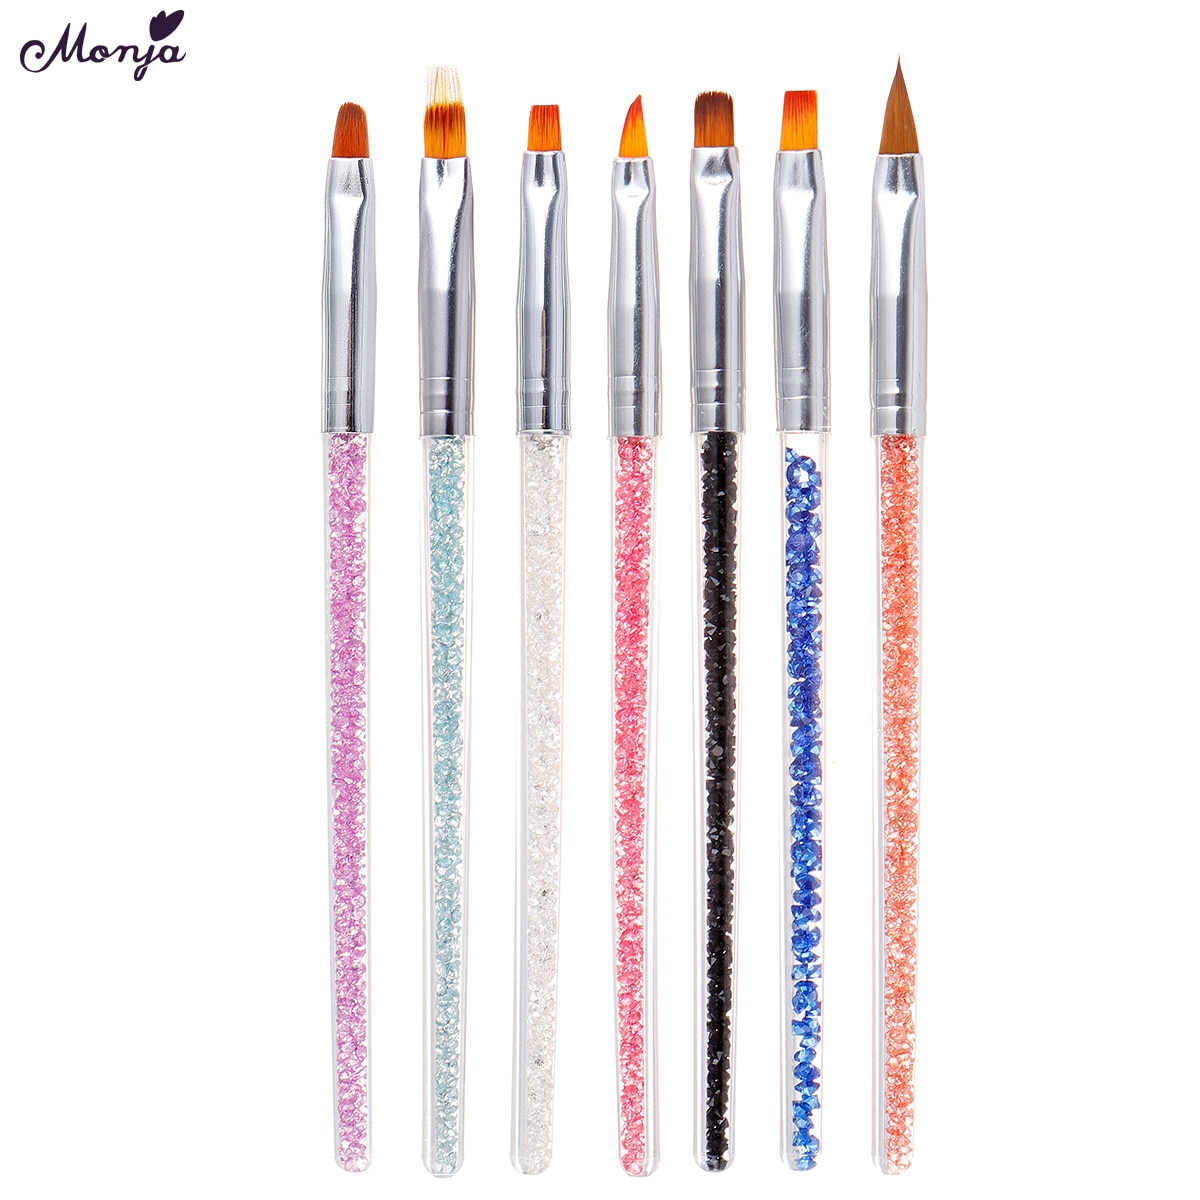 Monja 7 Stks/set Strass Handvat Nail Art Brush Kit Acryl Uv Gel Extension Builder Schilderen Patroon Diy Tekening Pen